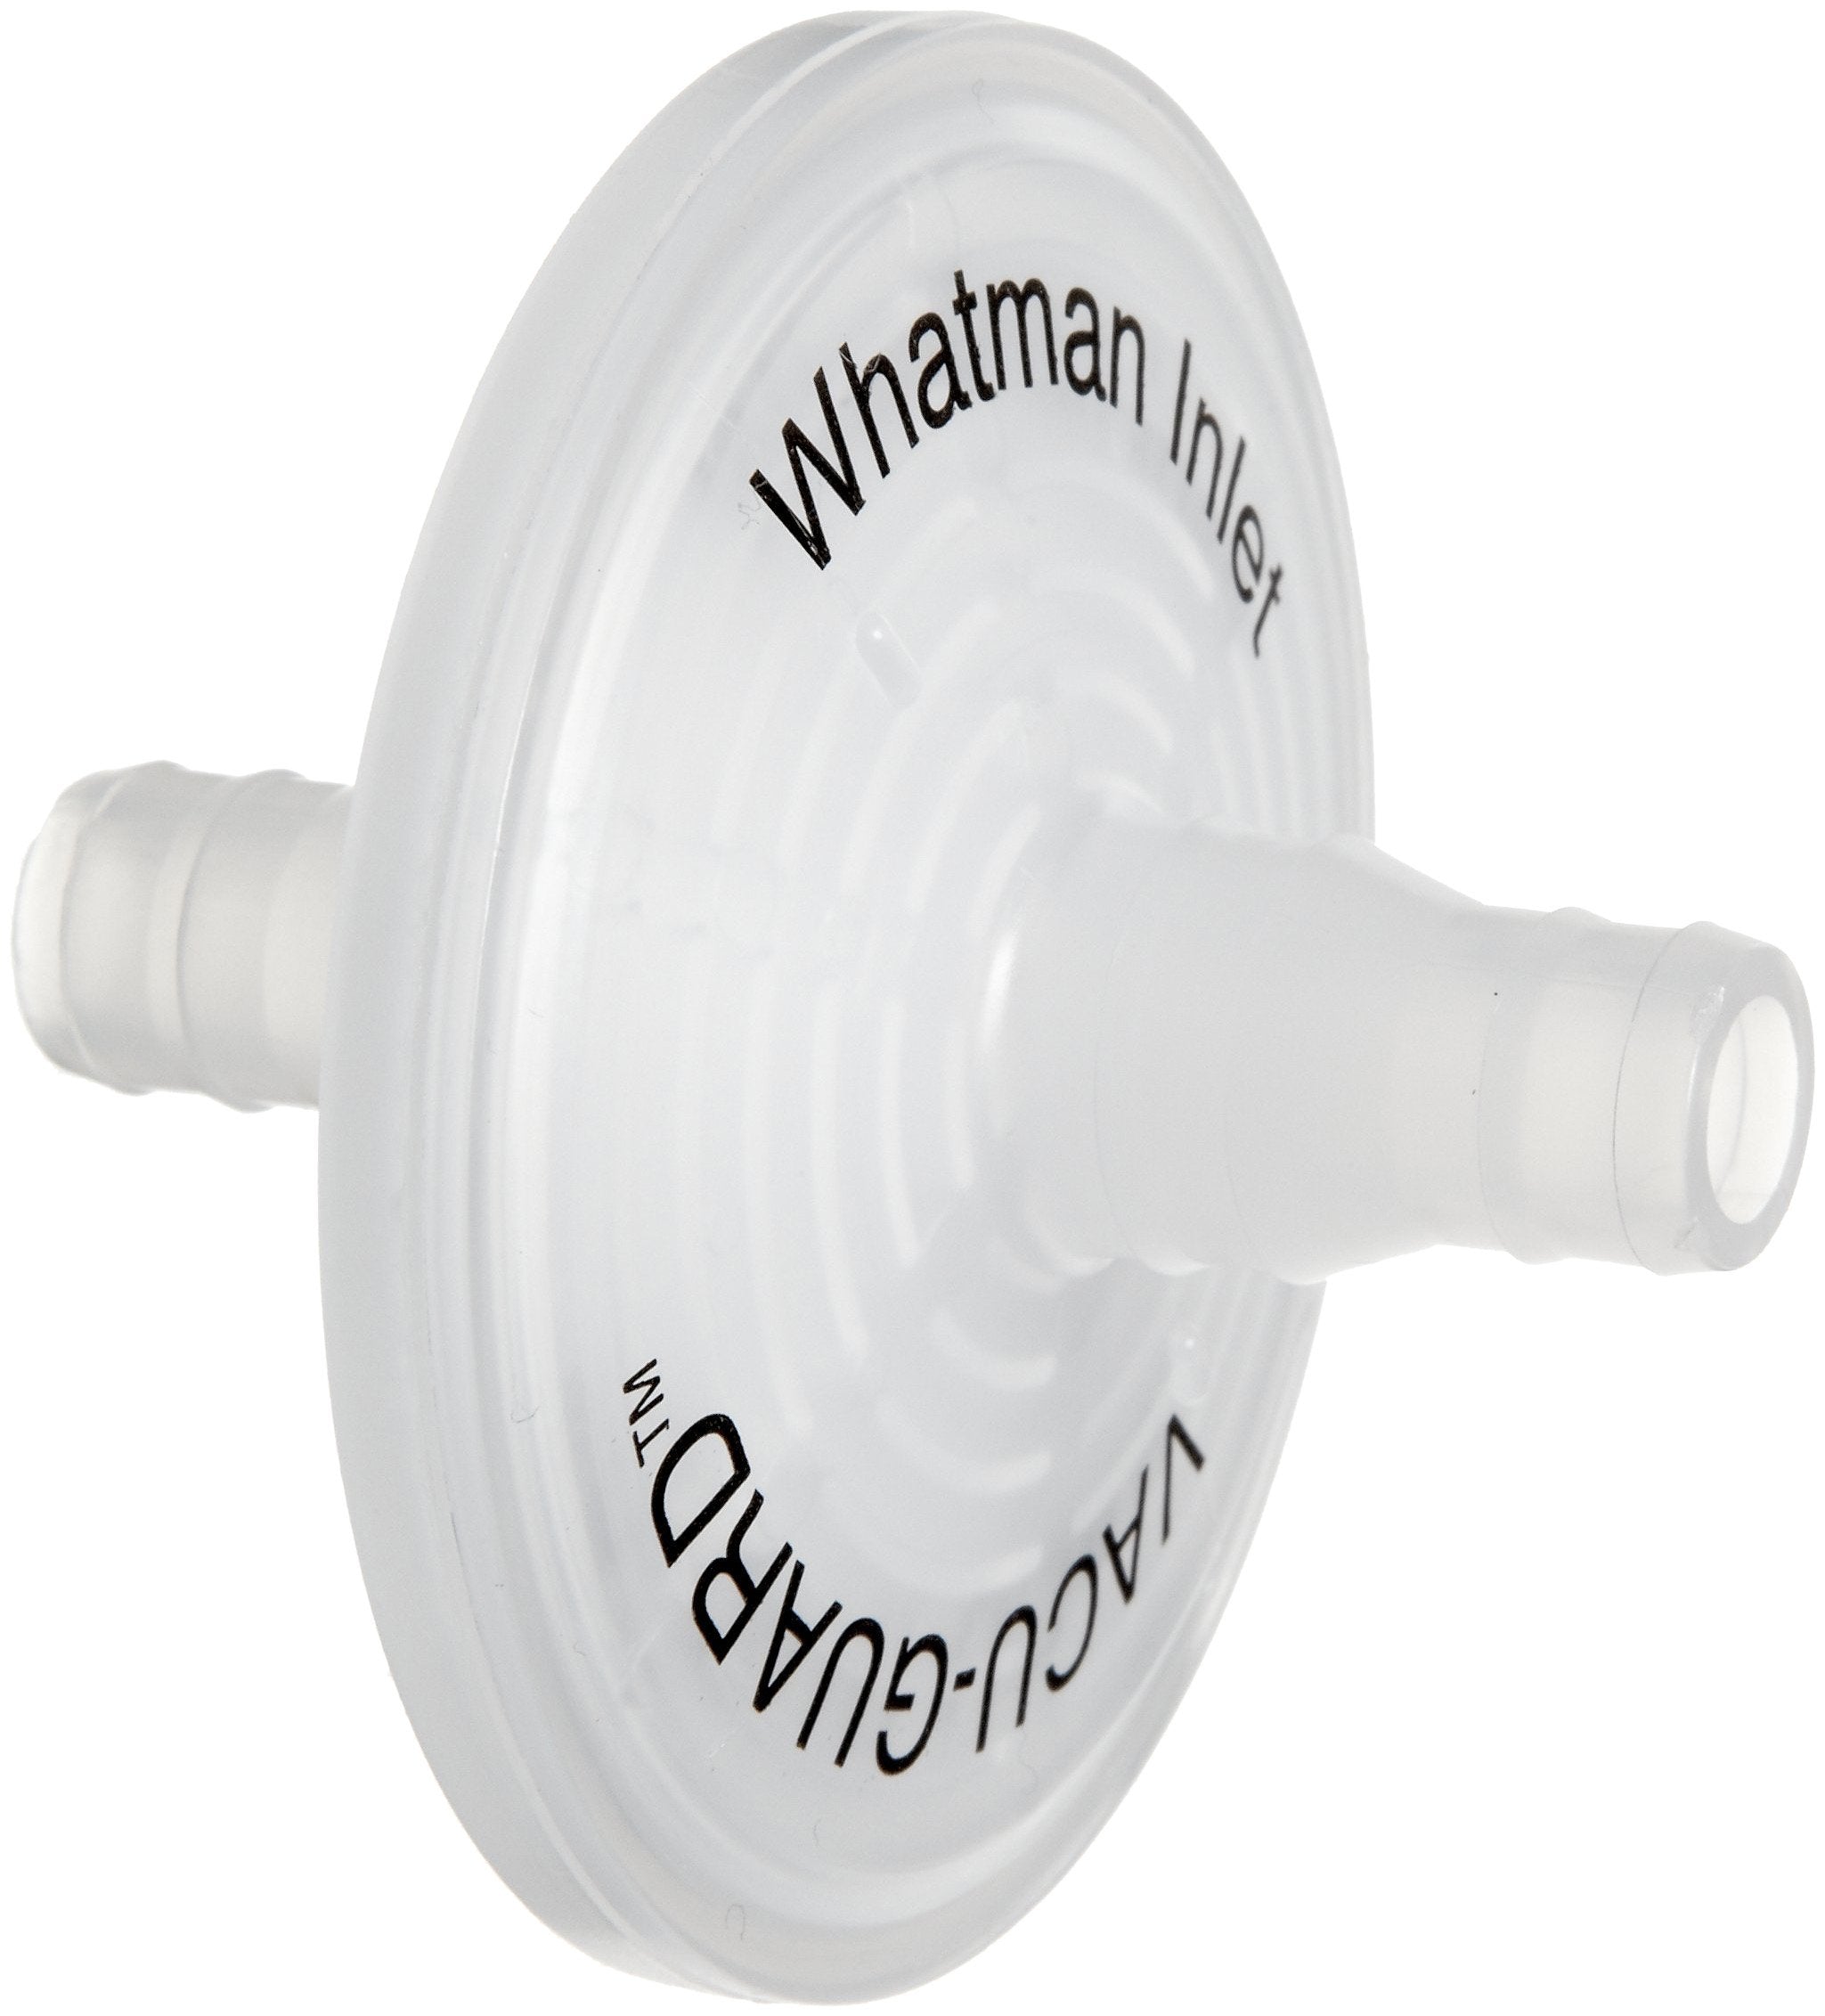 Whatman 6722-5001 VACU-GUARD, 0.2 micrometer PTFE, 60mm Disc, 10/pk (PN:6722-5001)